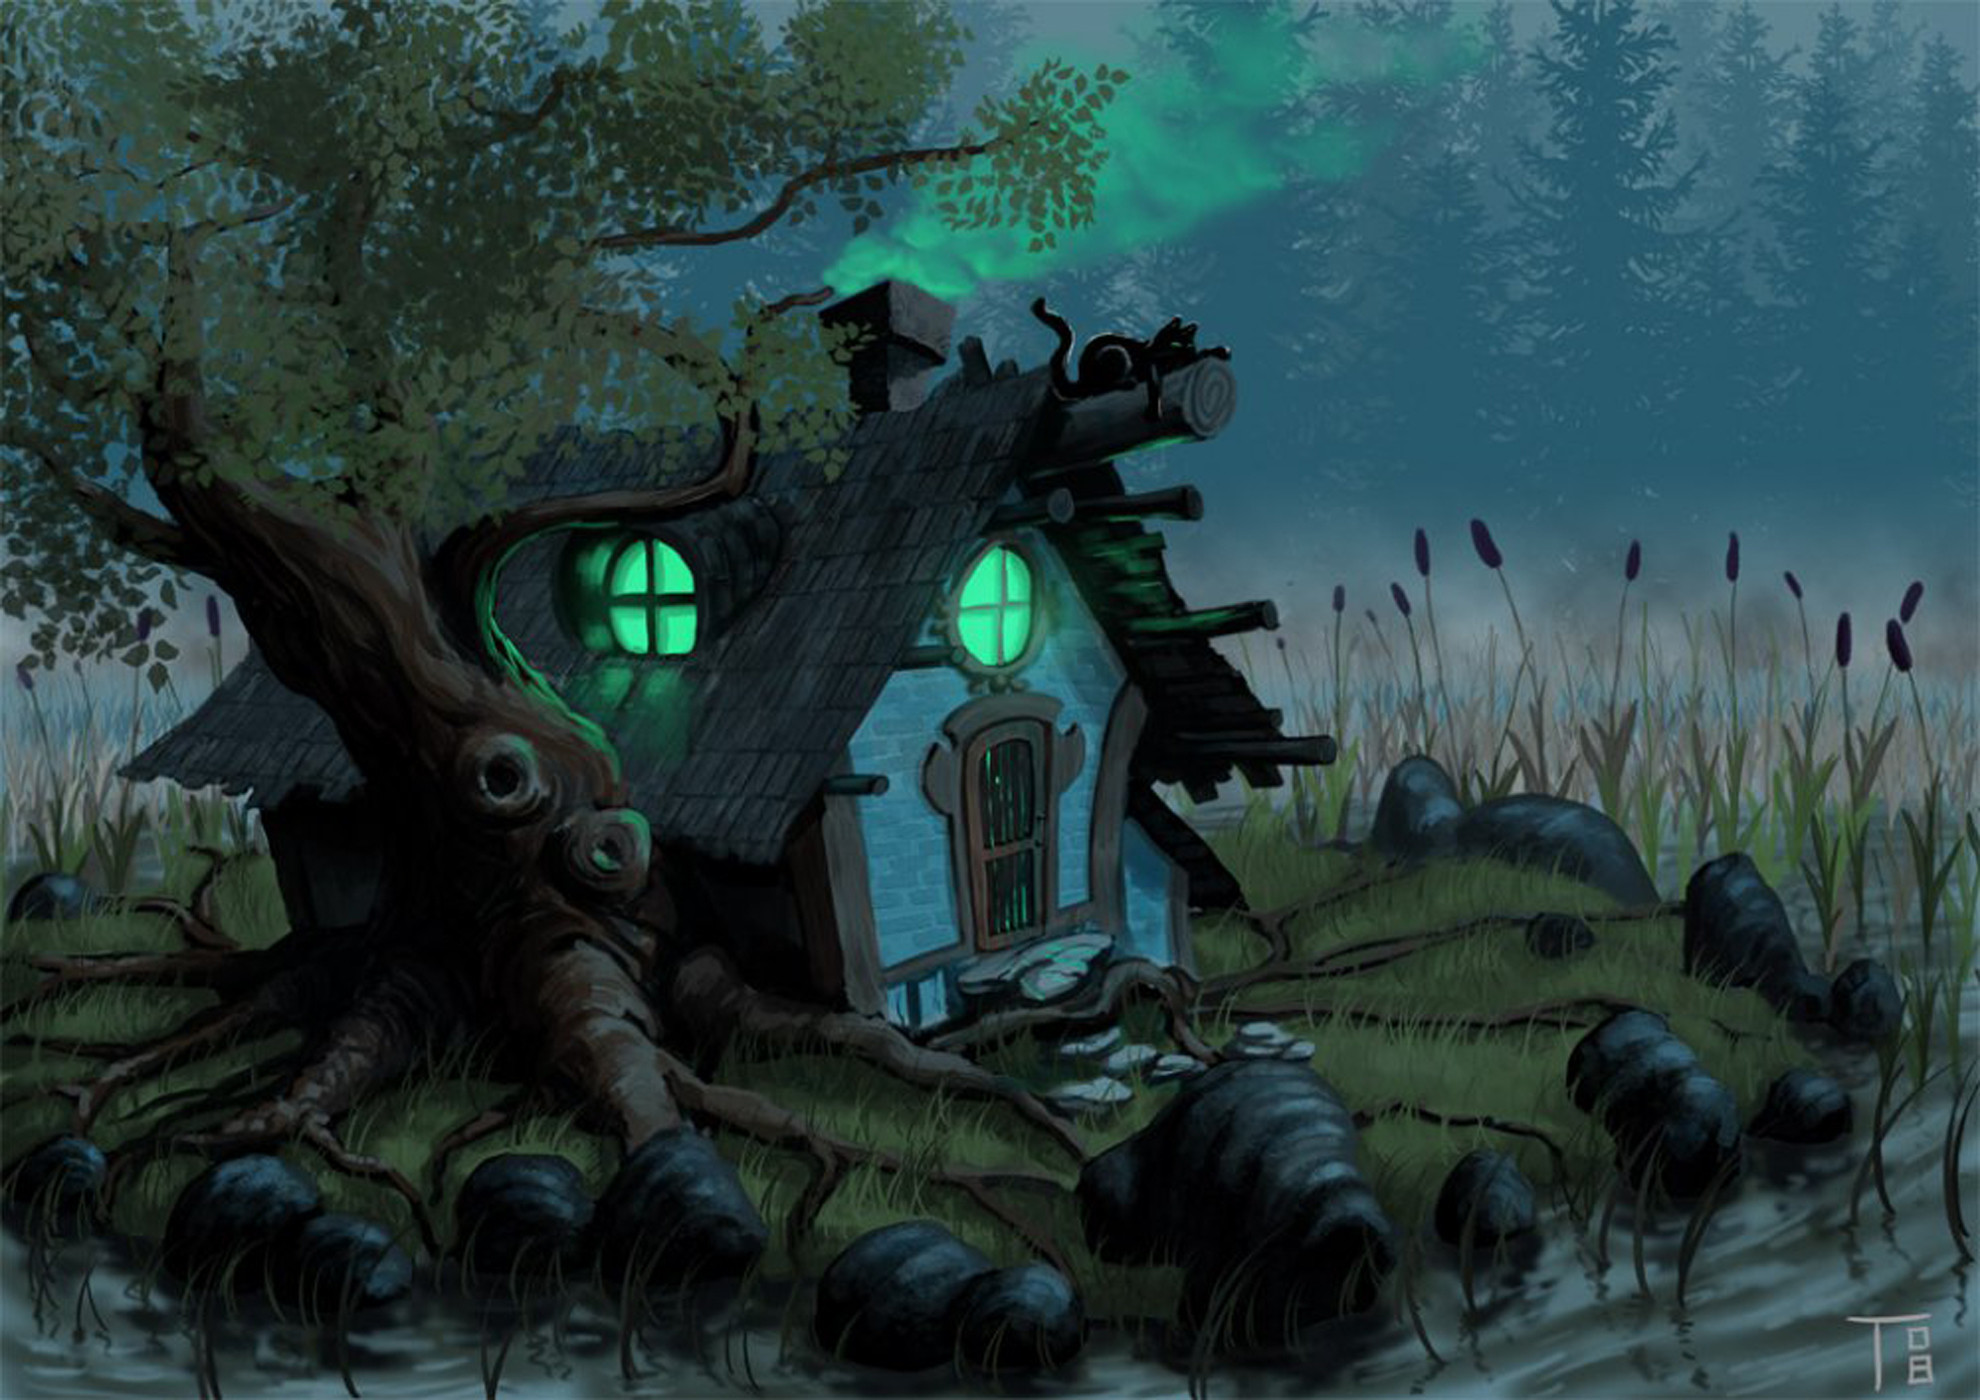 Halloween Animated Desktop Wallpaper Image